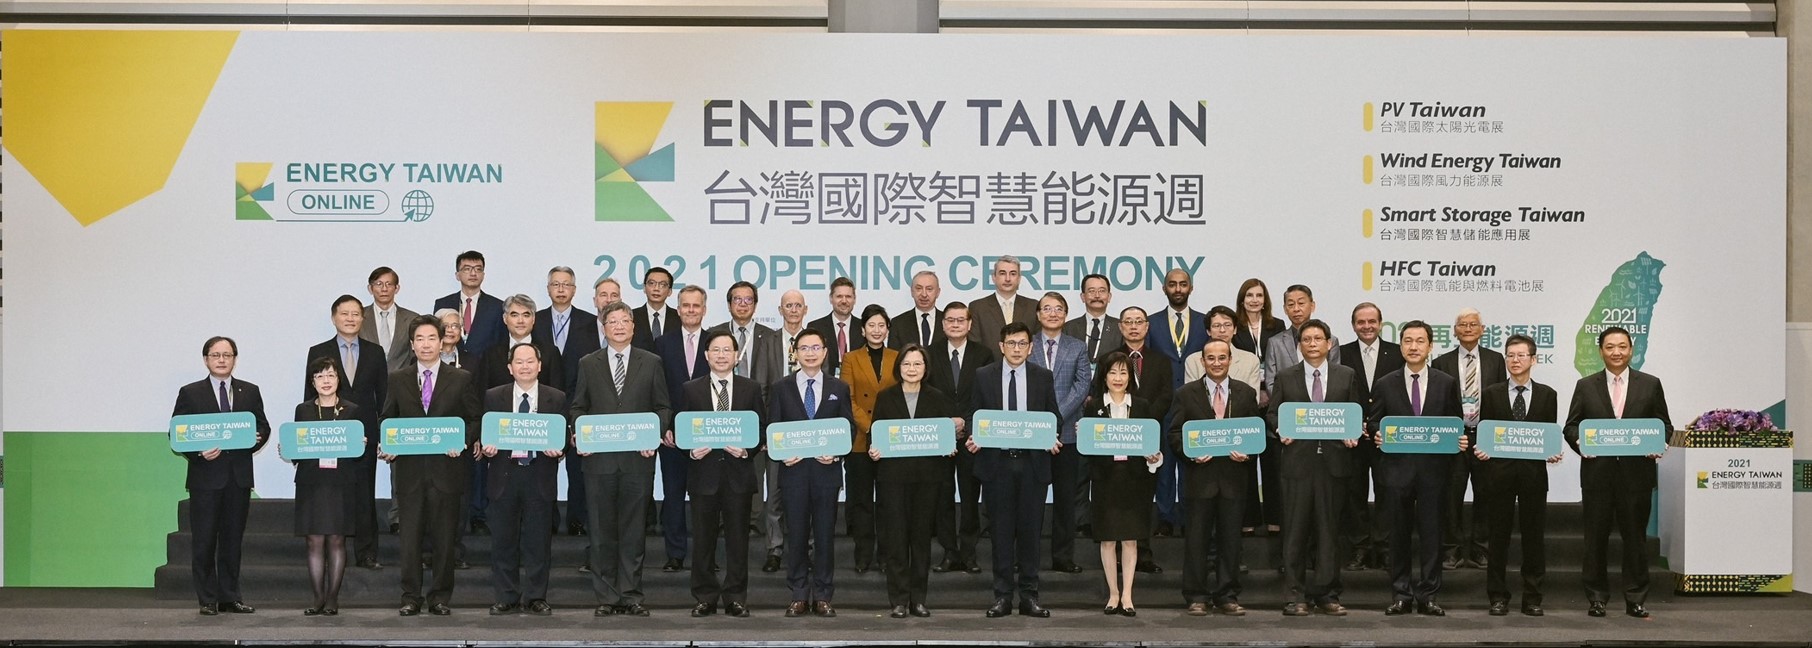 台灣國際智慧能源週大合照